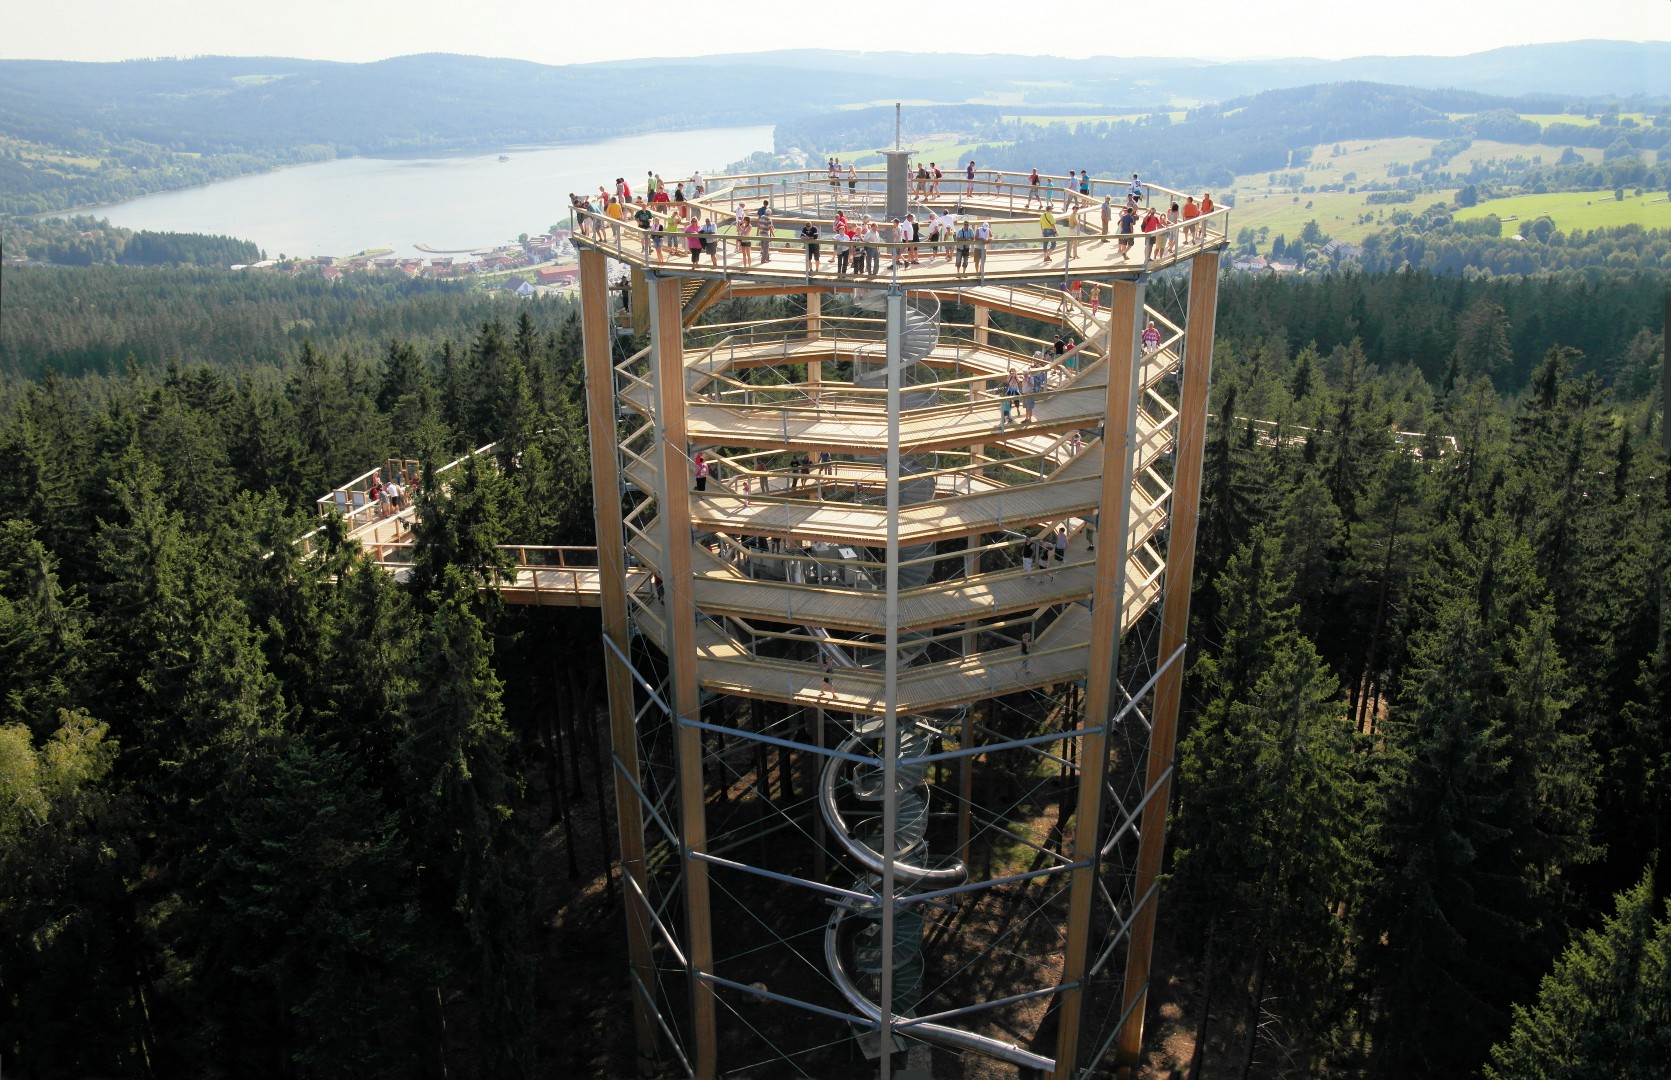 Stezka korunami stromů byla otevřena v roce 2012 a byla tak vůbec první svého druhu v České republice.